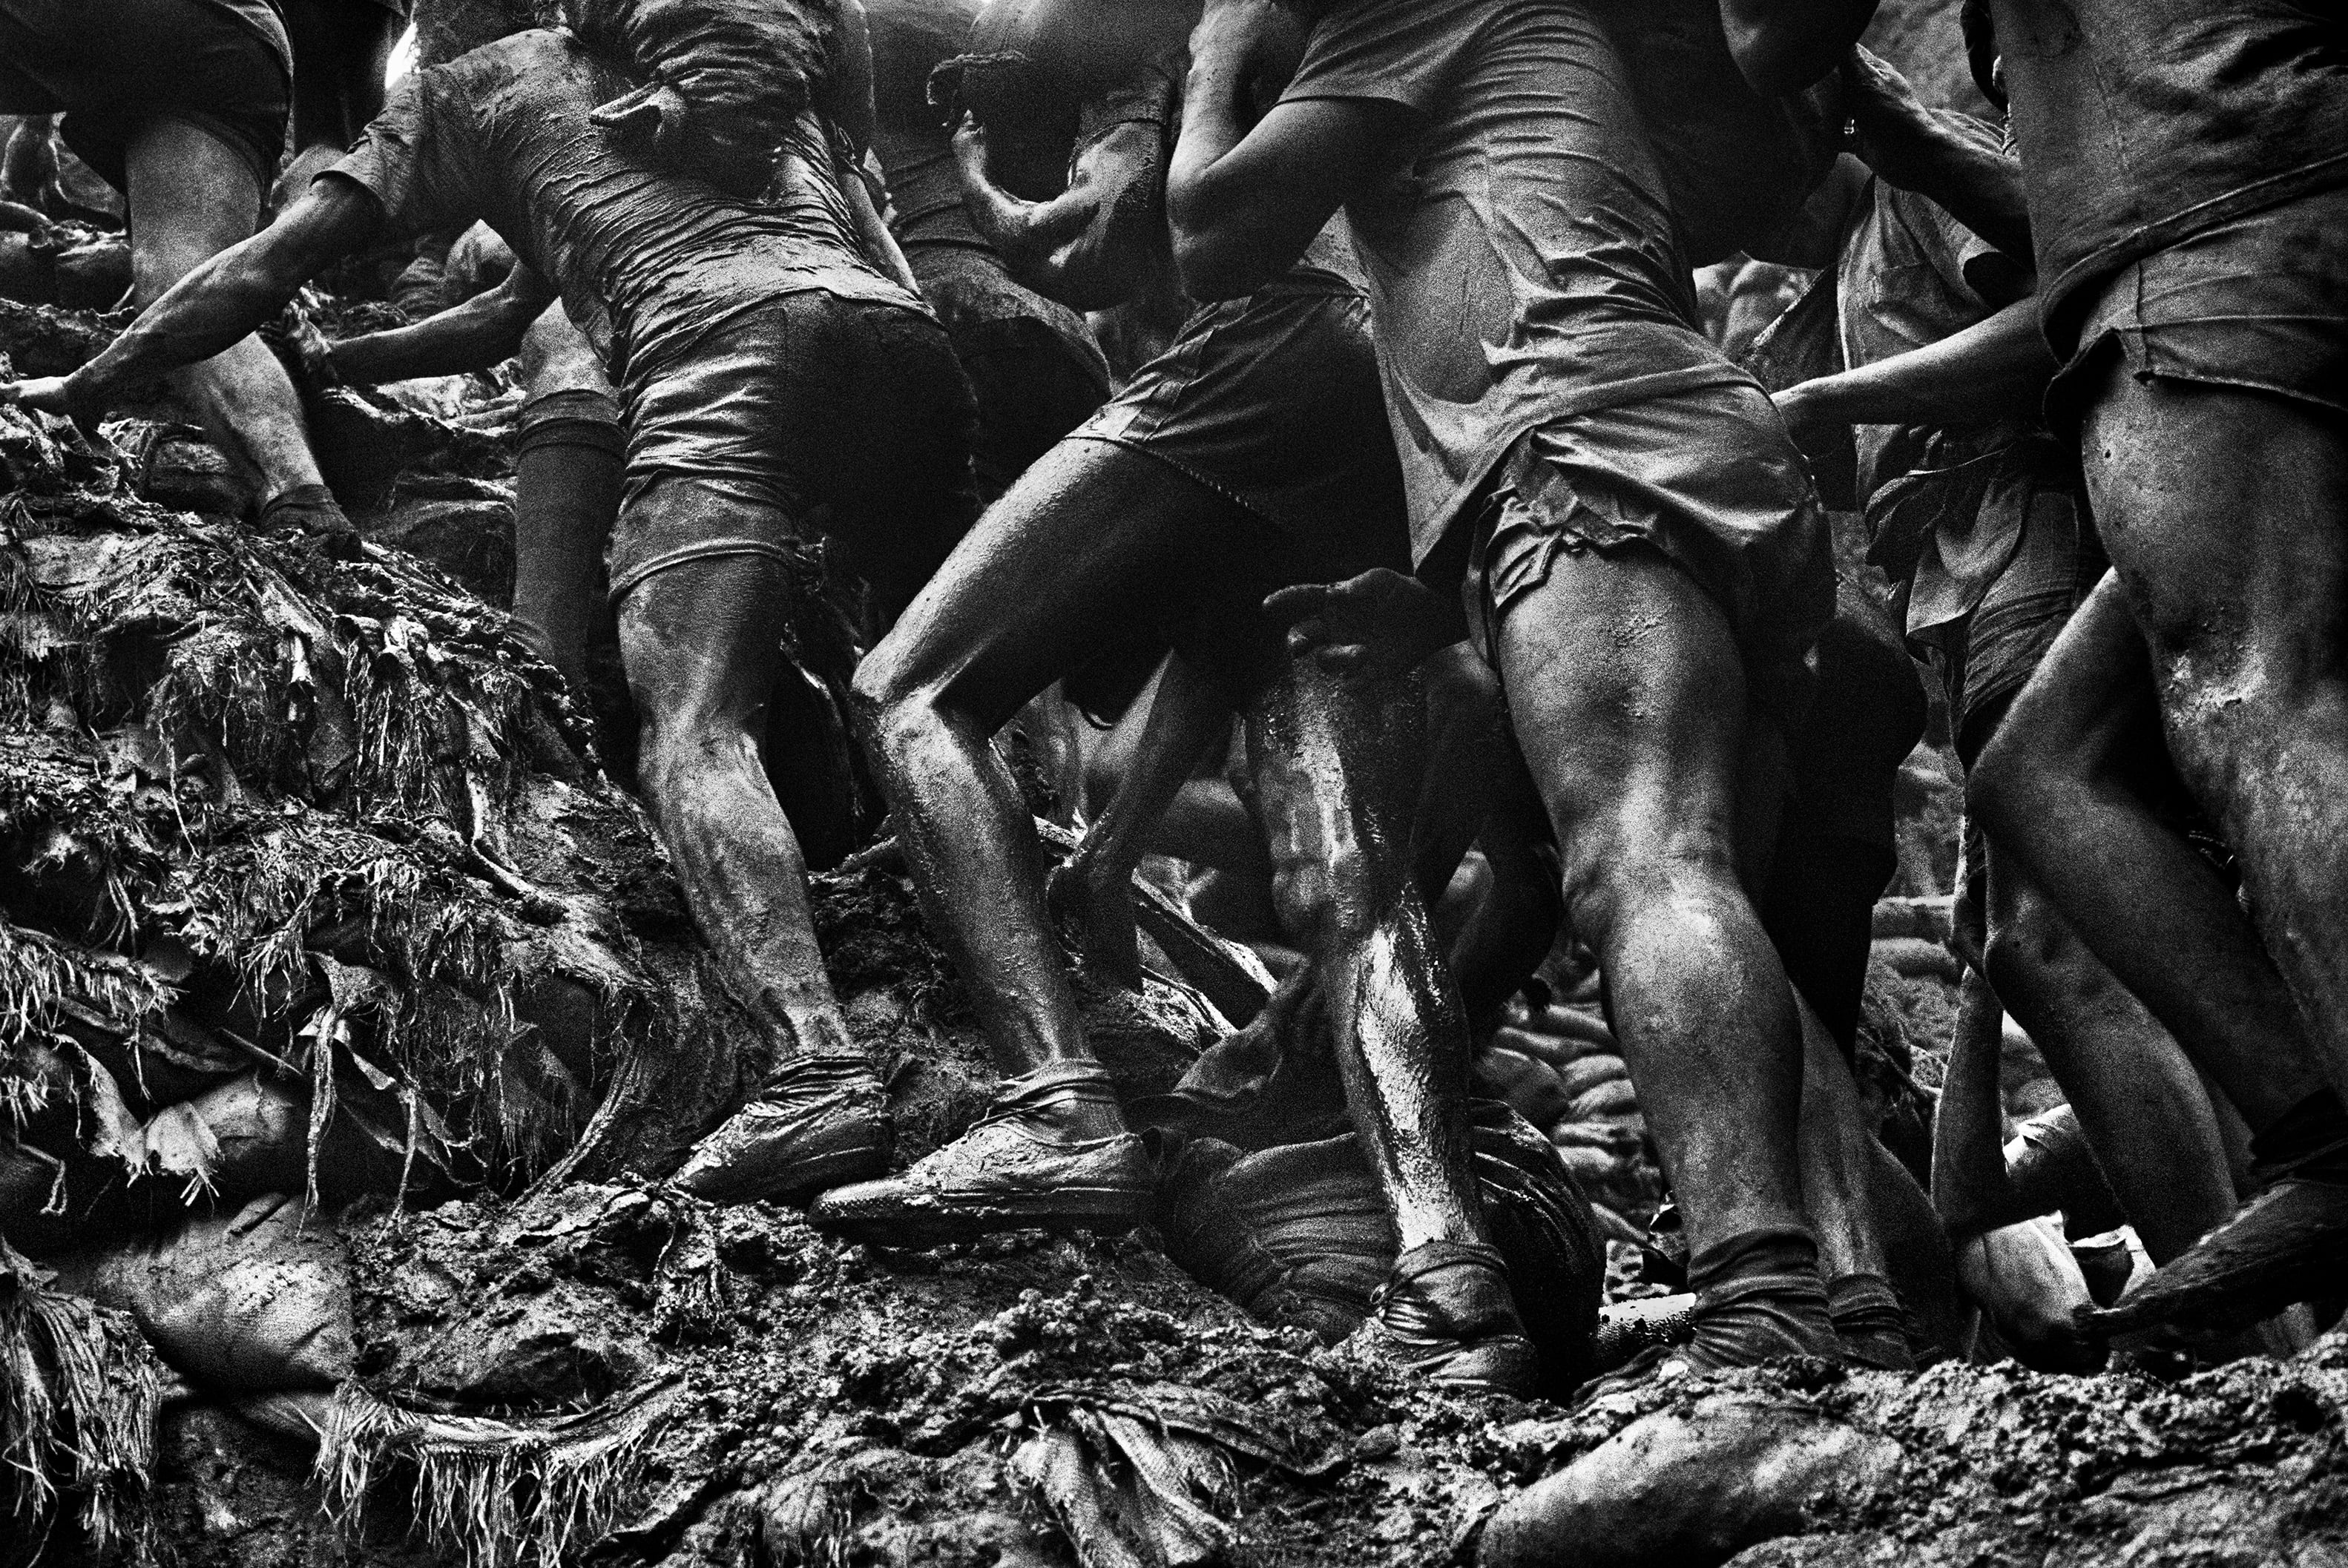 ブラジル金鉱労働者の四肢を彫刻的に描き出したモノクロ写真 神の眼を持つ写真家 セバスチャン サルガドの視点 Heaps